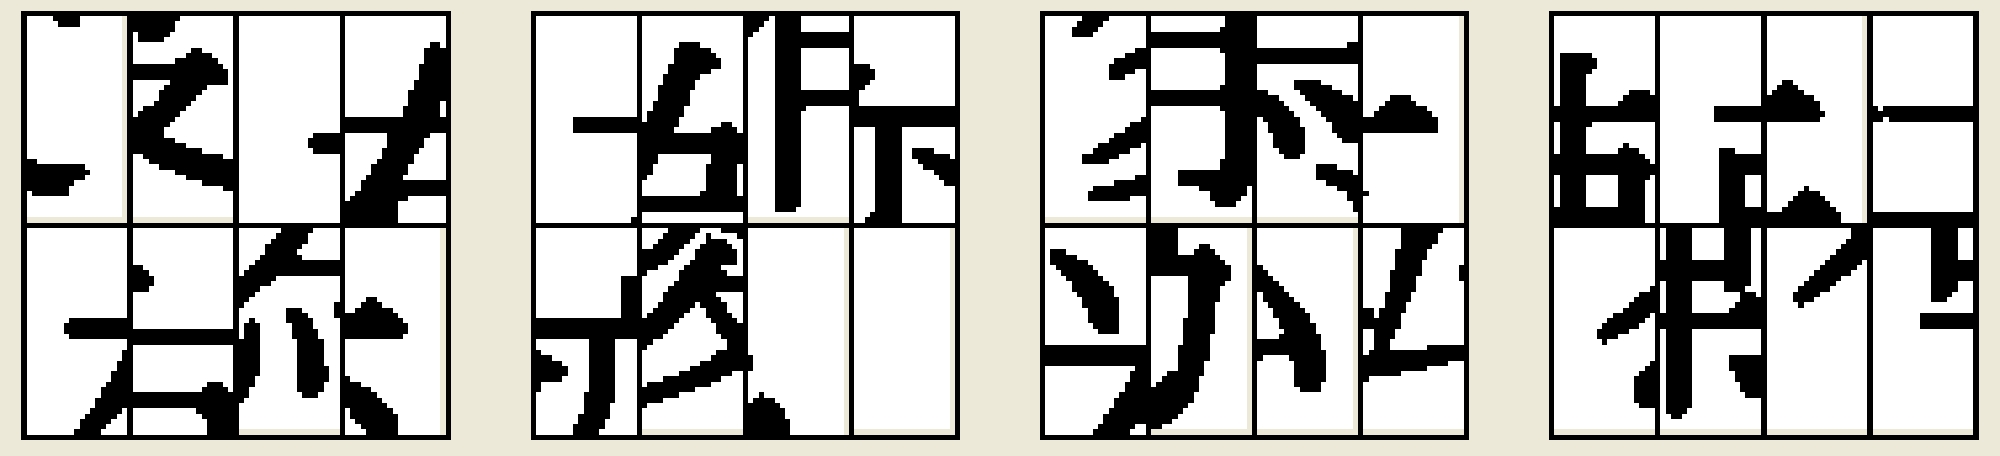 カテゴリー 漢字ジグソーパズル ４文字熟語 紙一枚で脳トレ 数独と迷路とパズルぬり絵で頭の体操